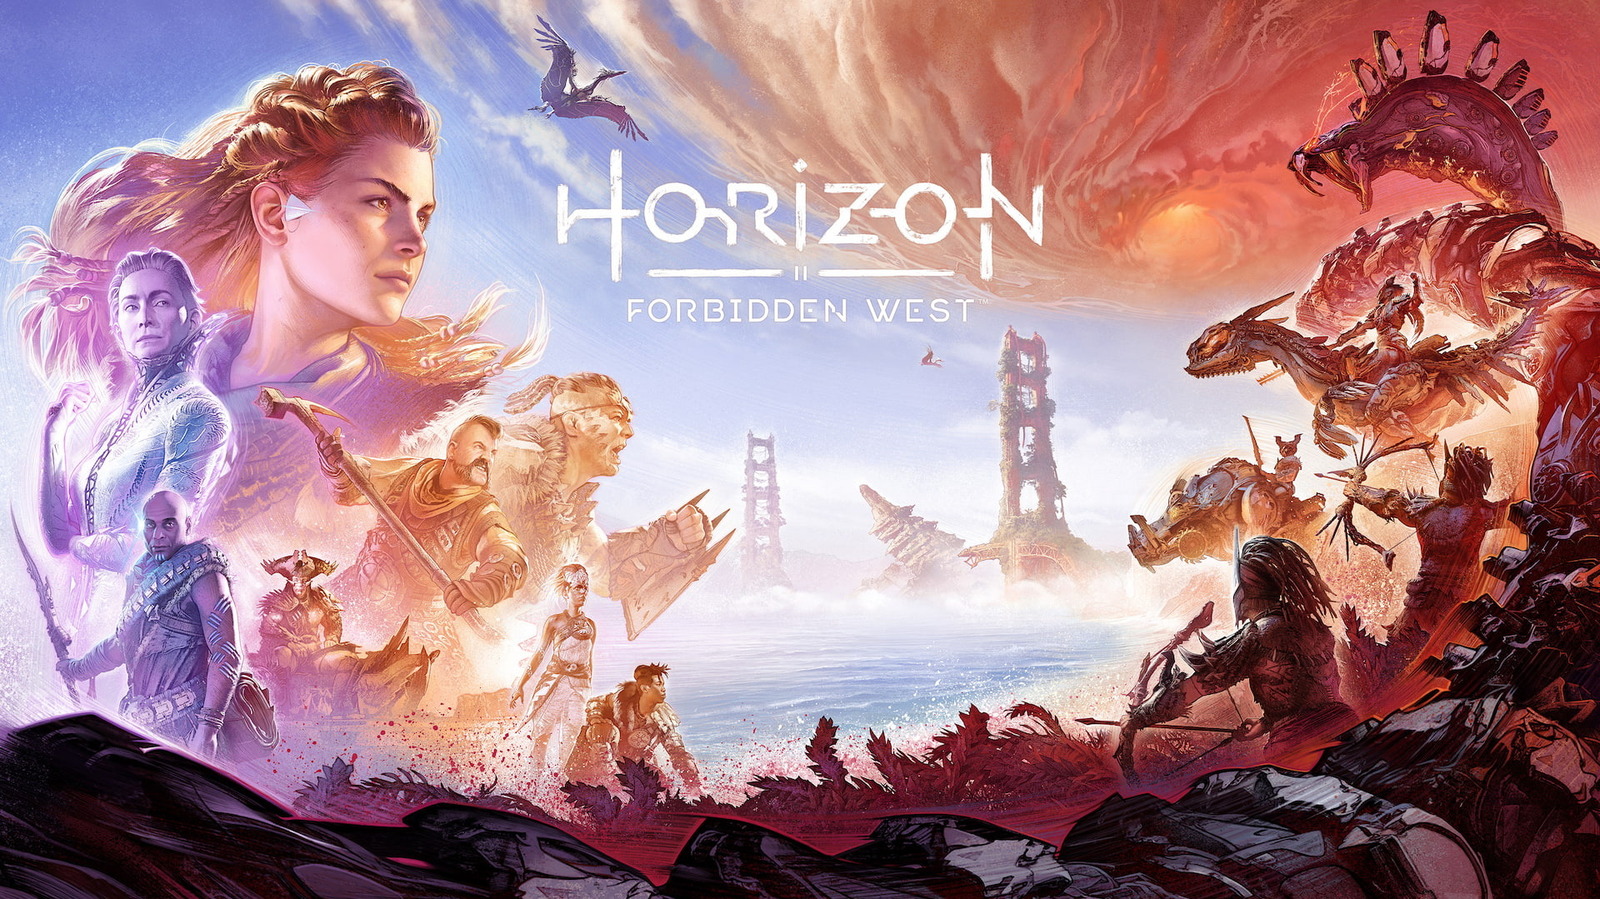 Horizon Forbidden West' Is a Worthy Sequel